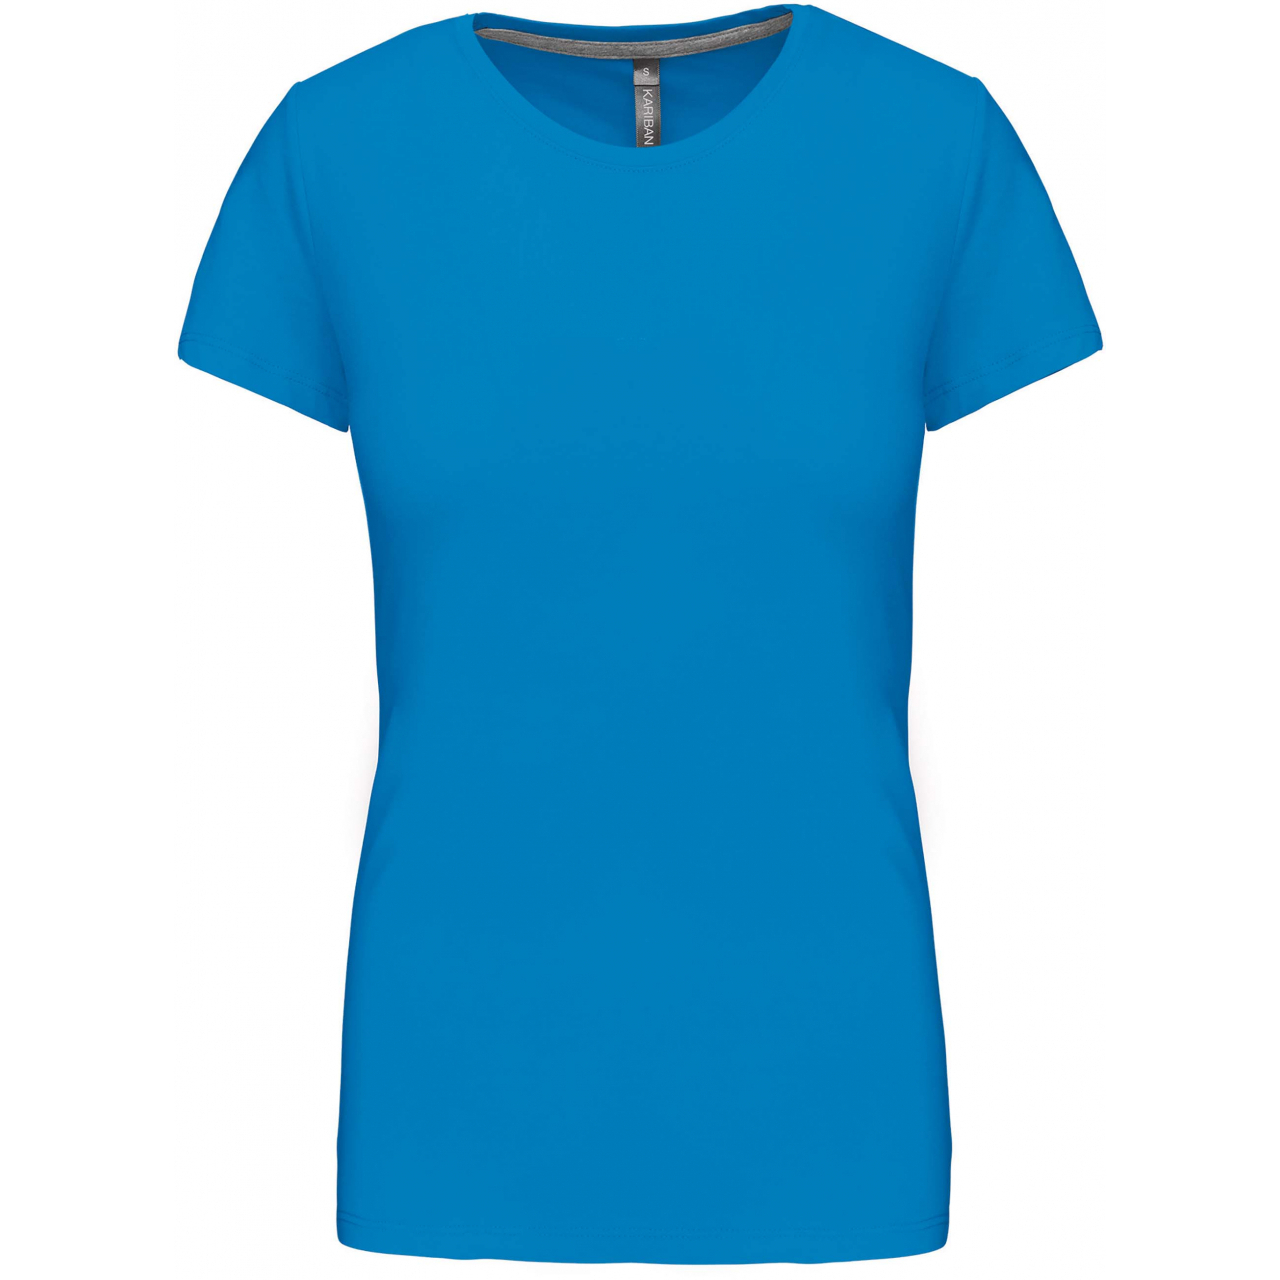 Dámské tričko Kariban s krátkým rukávem - středně modré, XL